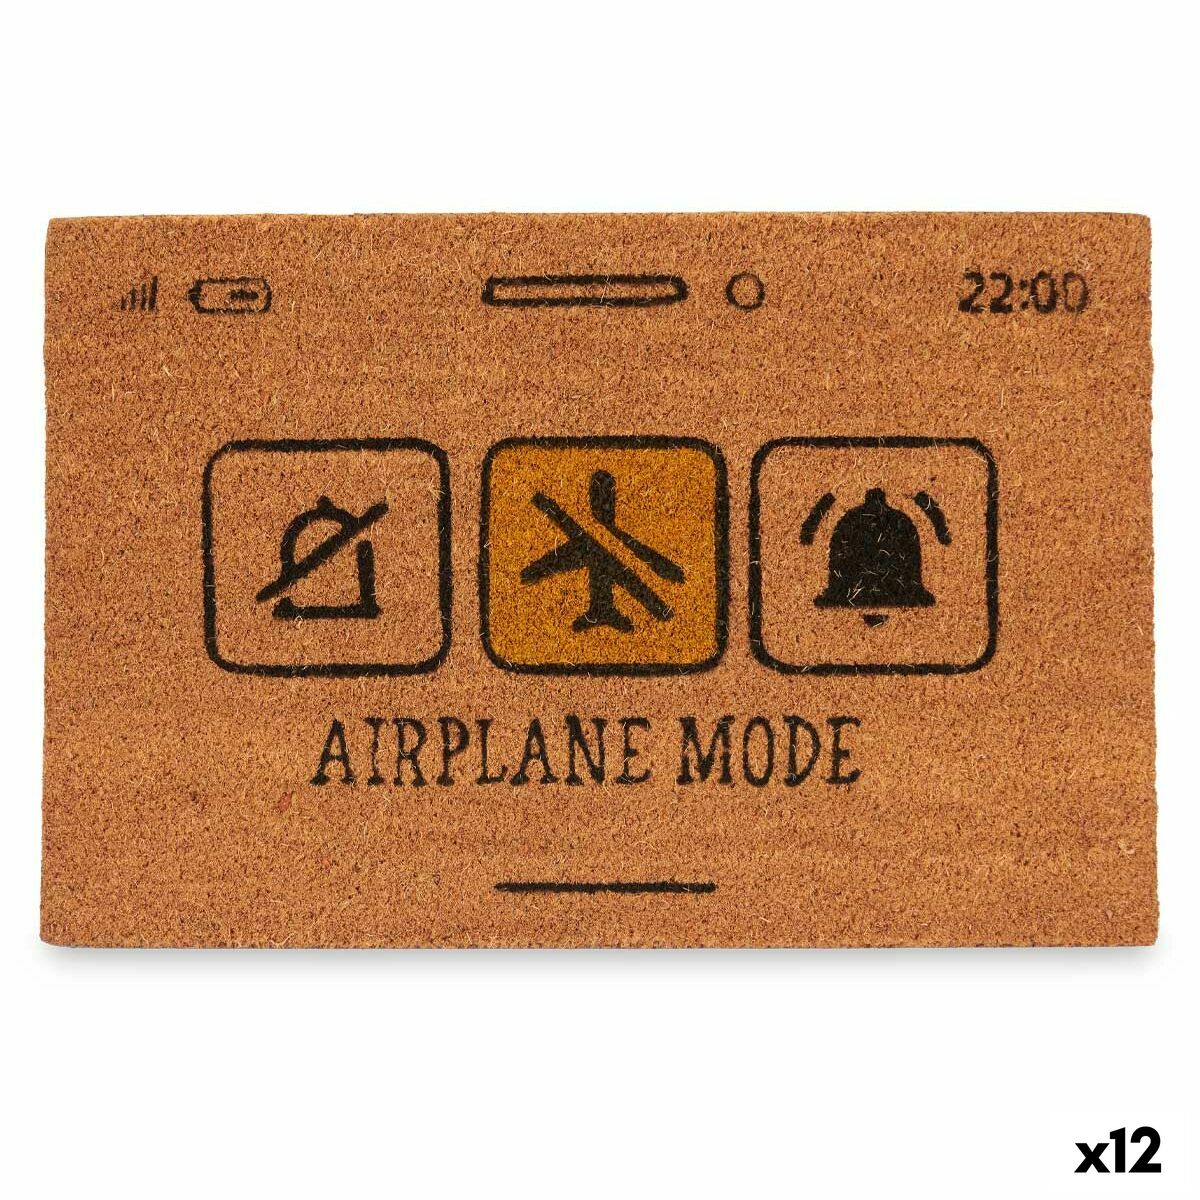 Zerbino Airplane Mode Giallo Naturale 60 x 1 x 40 cm (12 Unità)